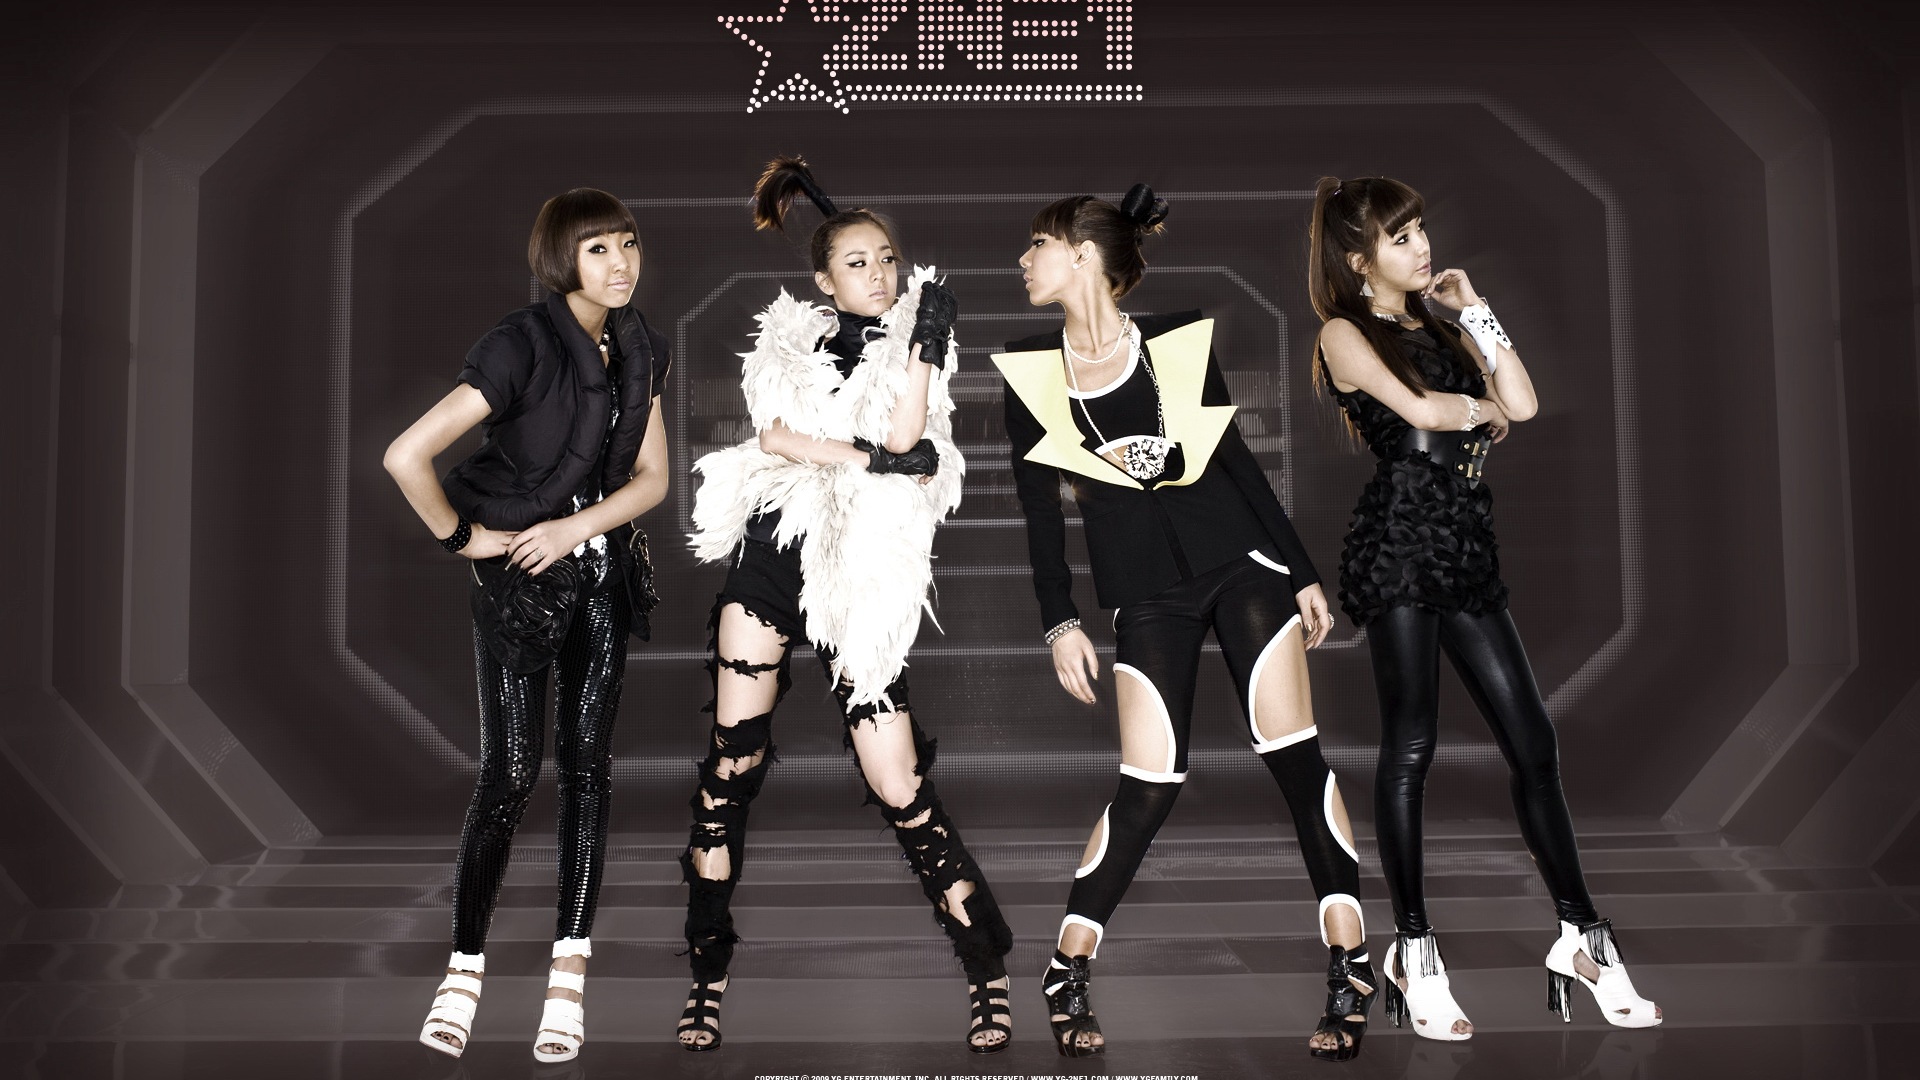 韩国音乐女孩组合 2NE1 高清壁纸11 - 1920x1080